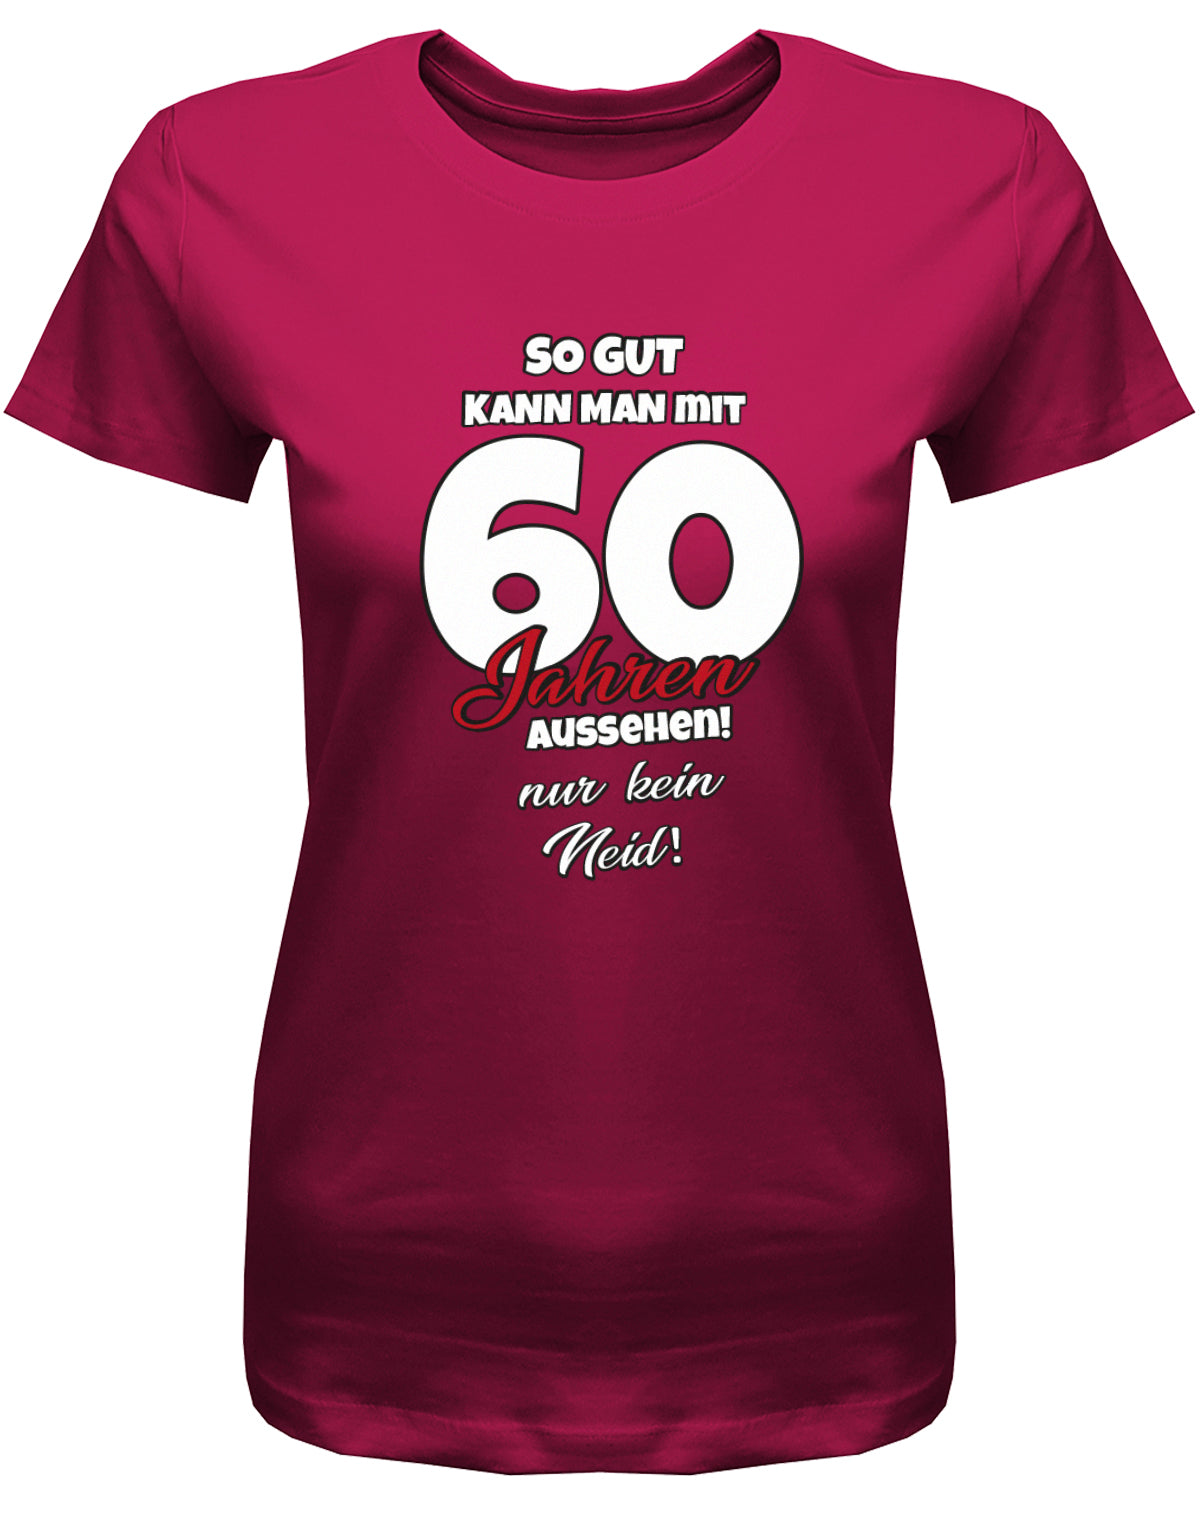 Lustiges T-Shirt zum 60 Geburtstag für die Frau Bedruckt mit So gut kann man mit 60 Jahren aussehen! Nur kein Neid! Sorbet